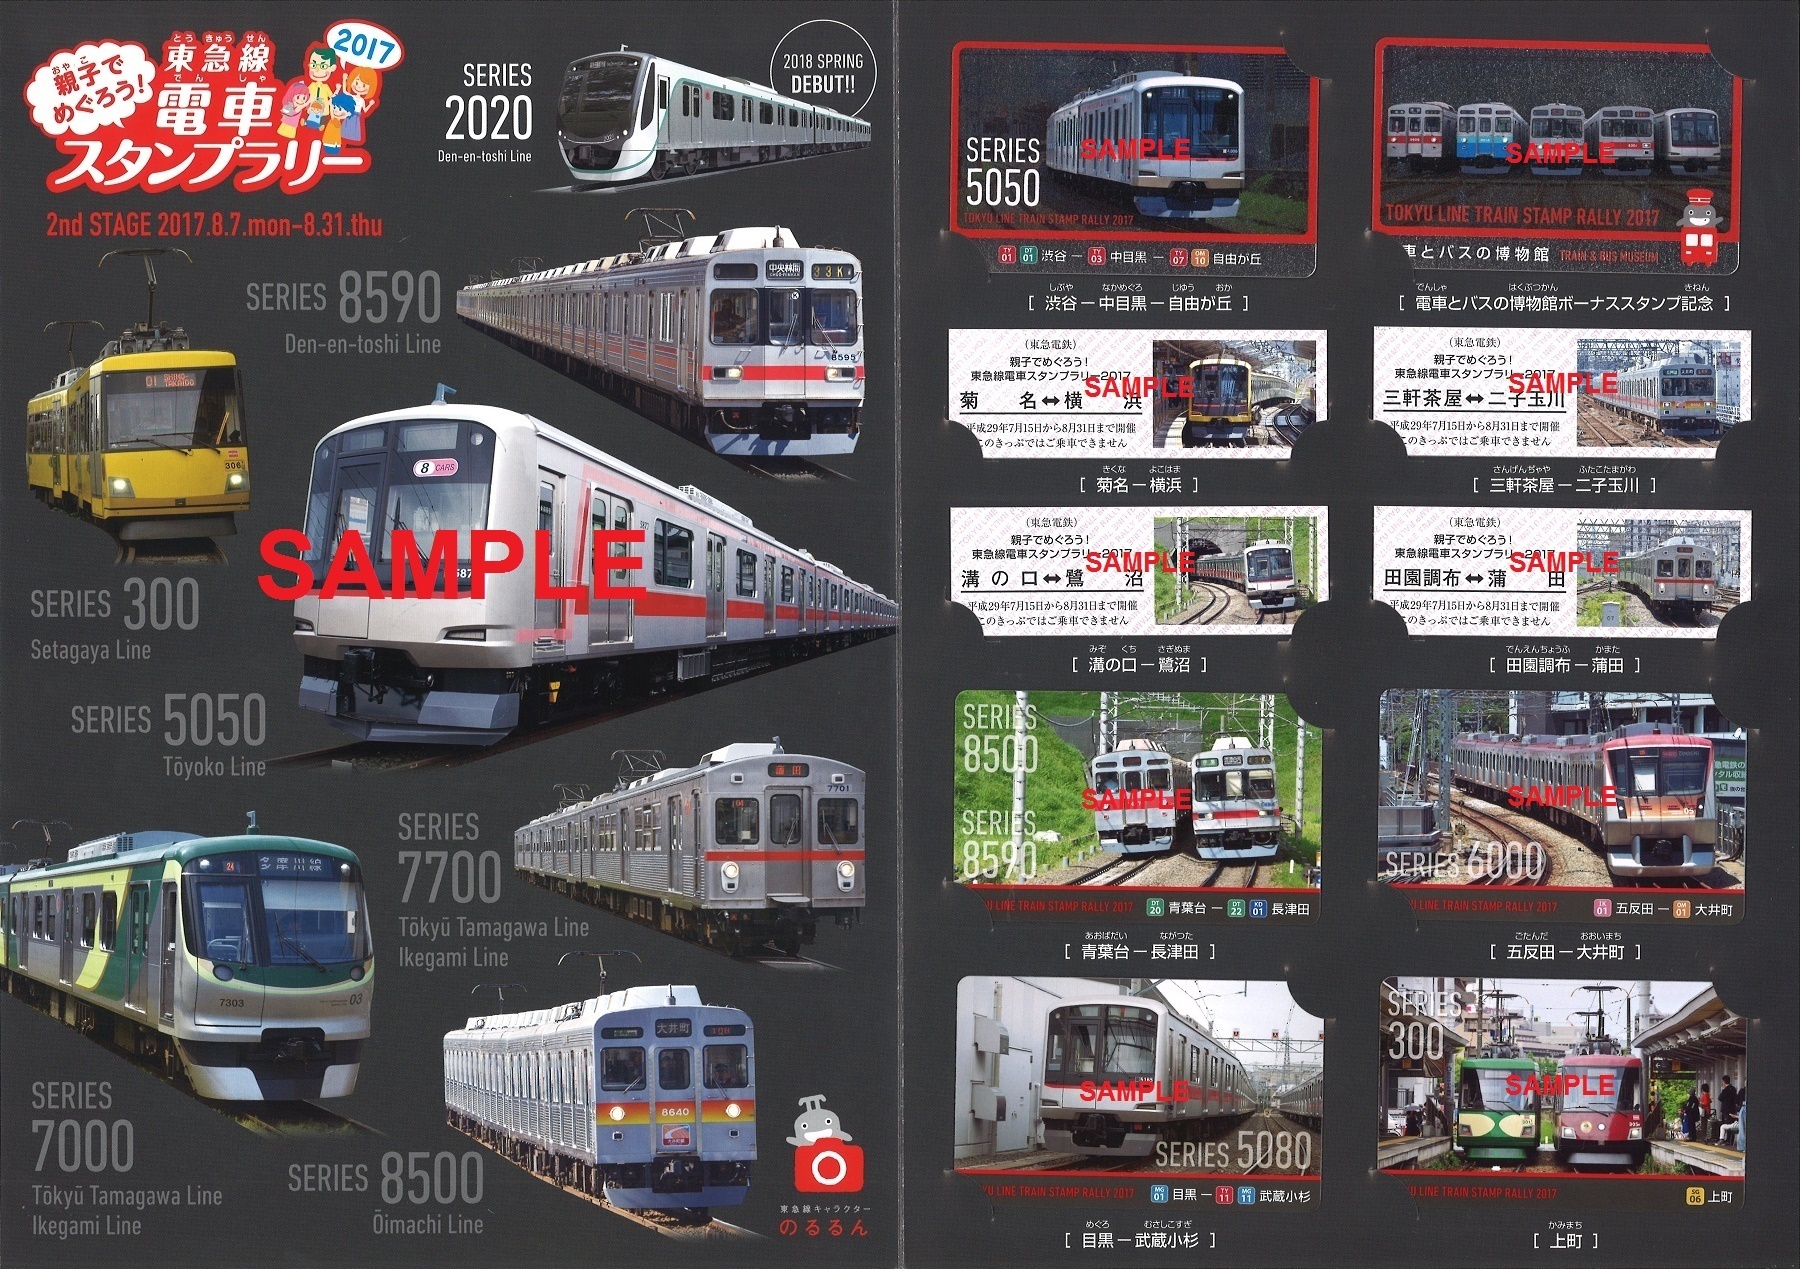 東急電鉄 スタンプラリー2022 電車カード Hikarie号